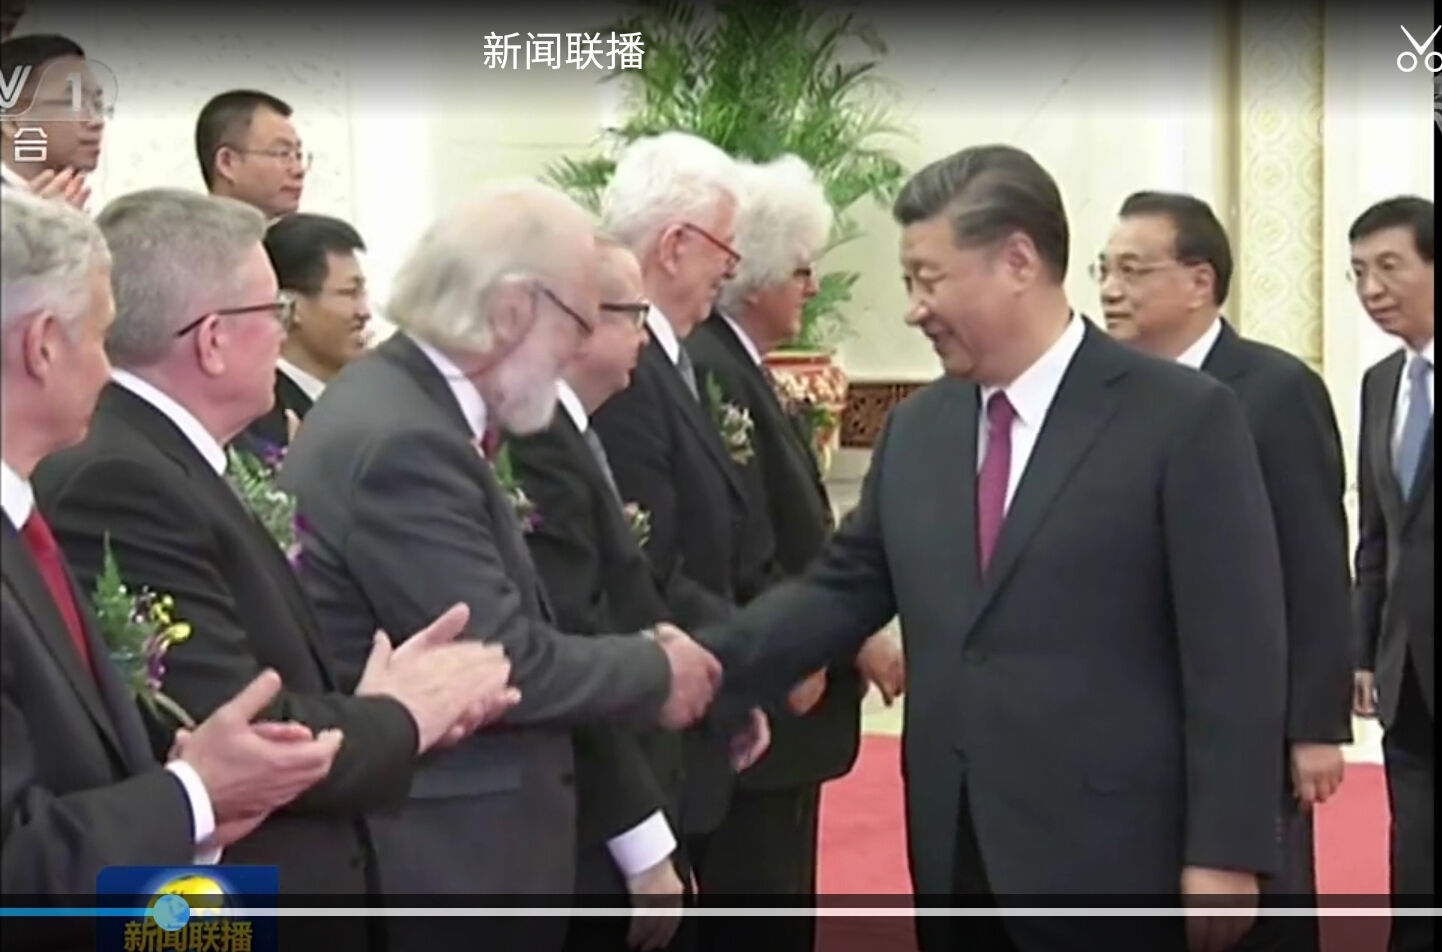 Nils Chr. Stenseth håndhilser på president Xi Jinping